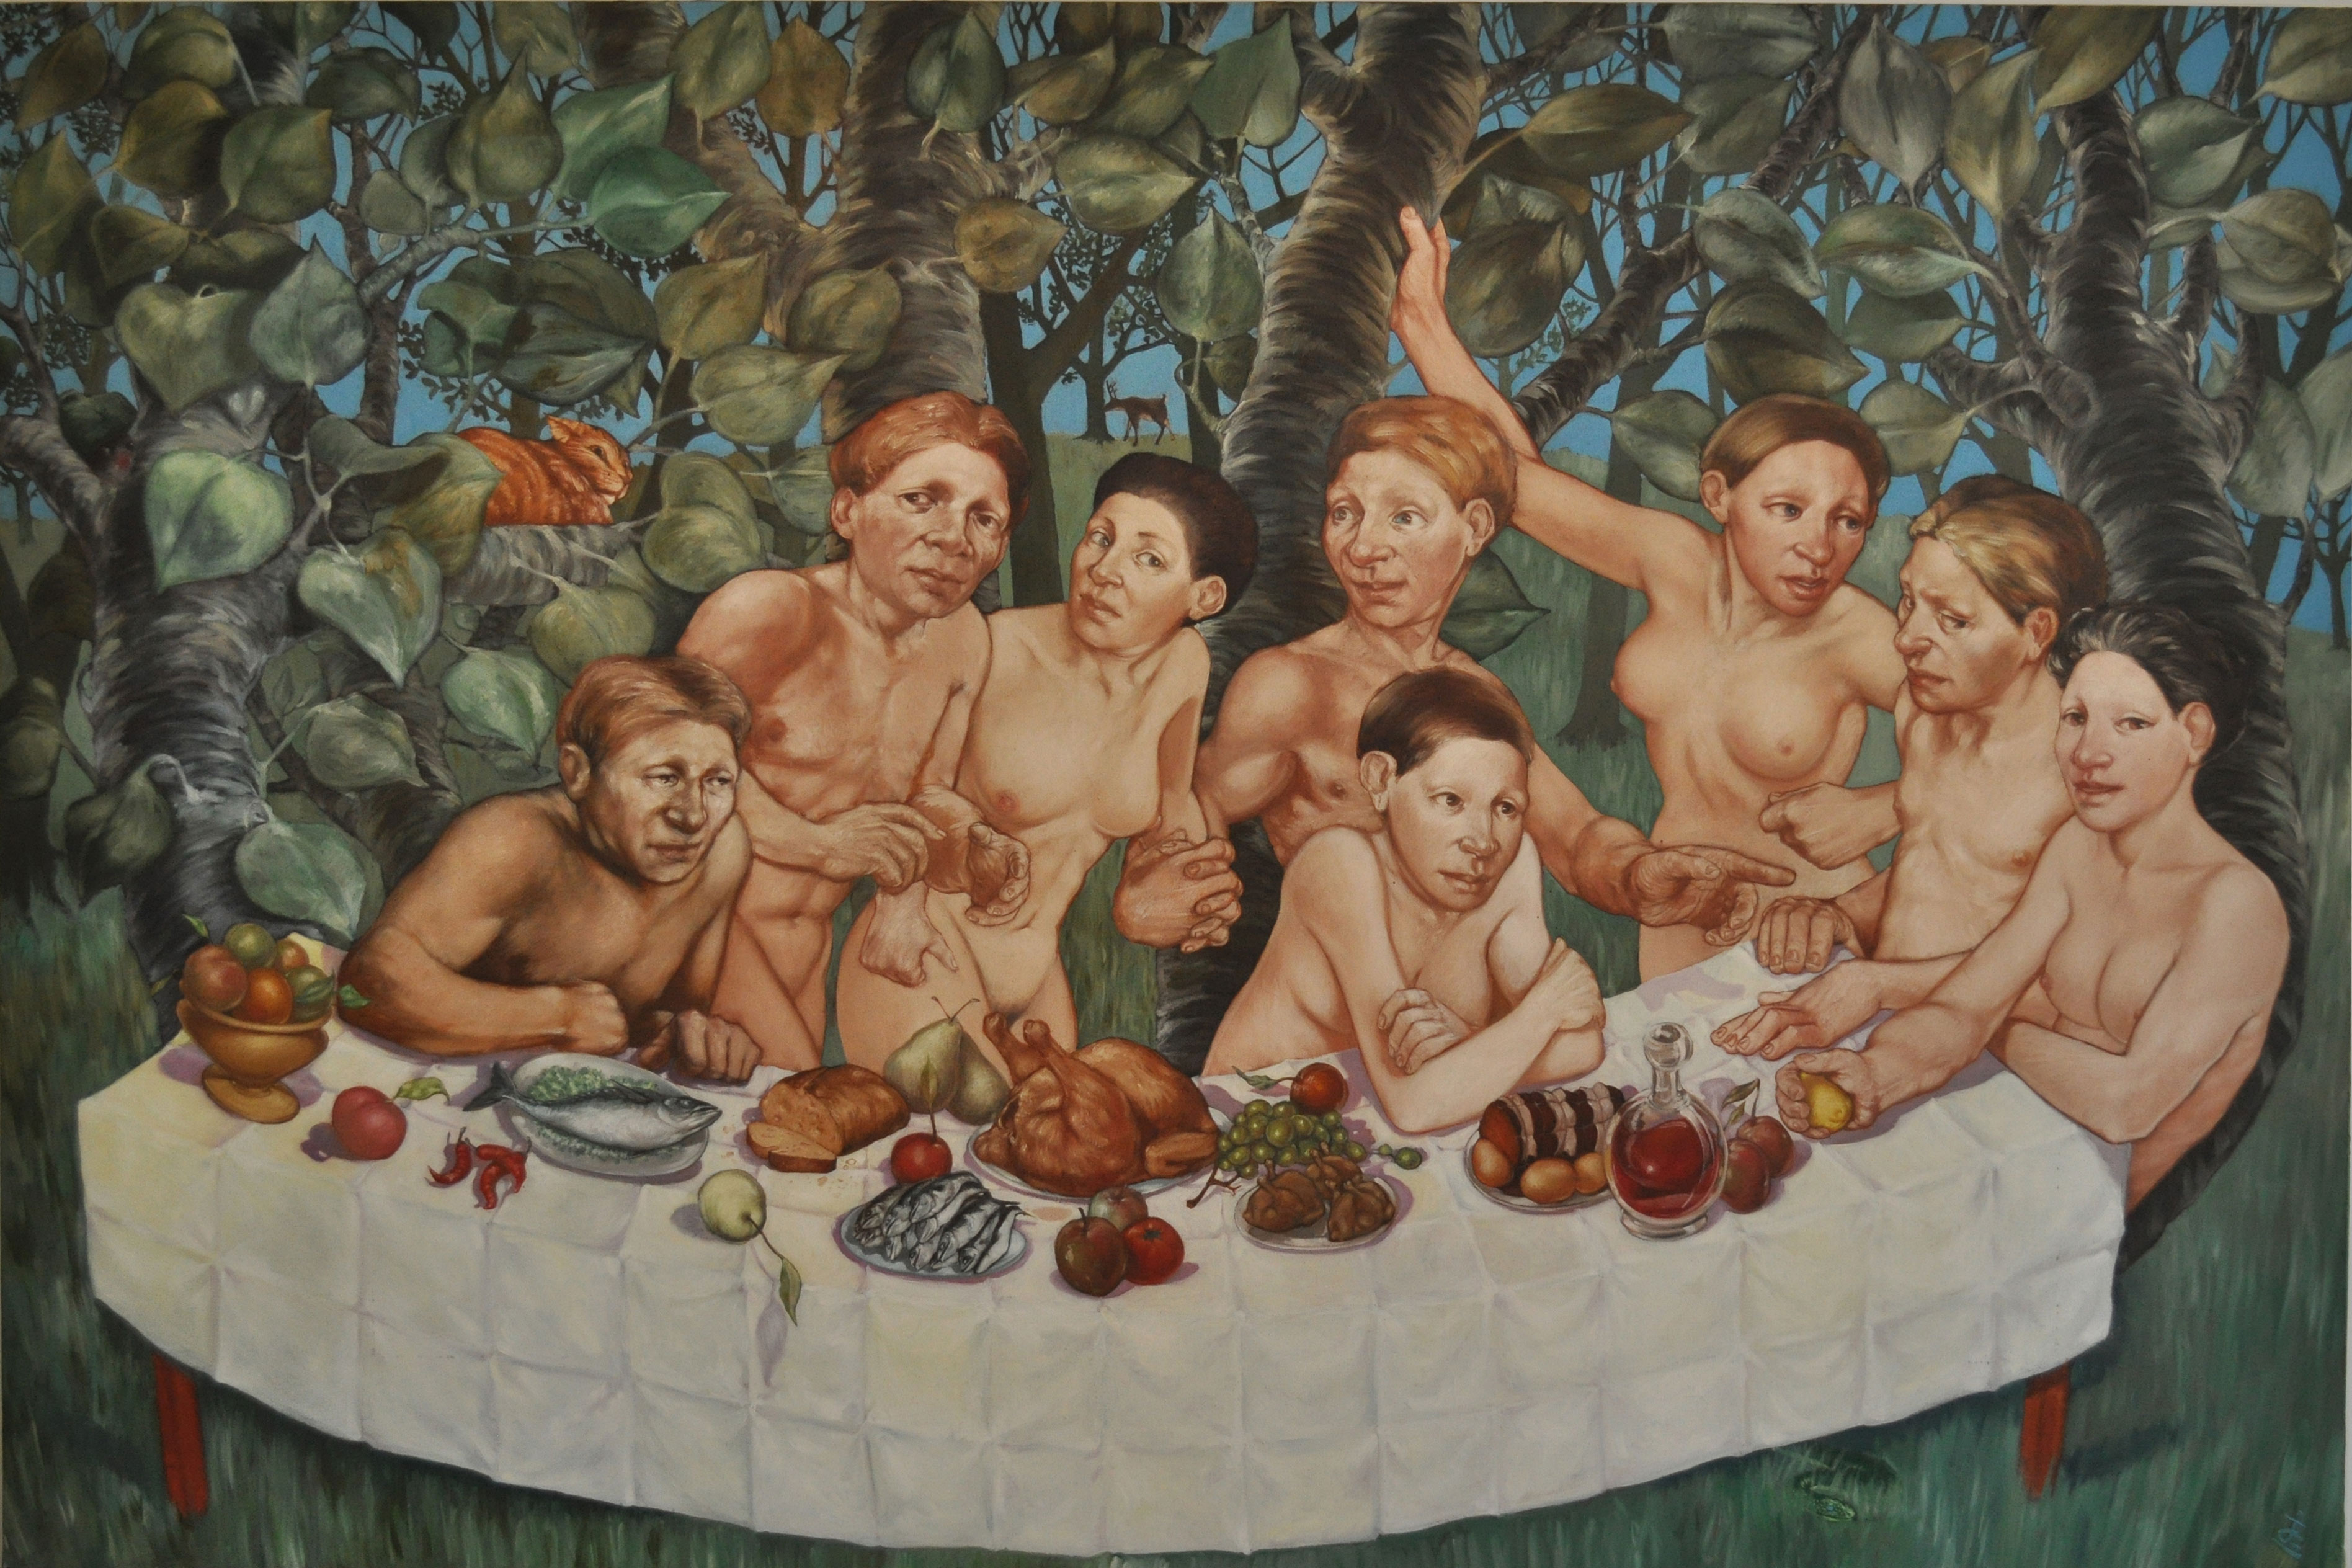 La scène se situe dans un bois d'arbres trapus à grandes feuilles rondes. Une grande table traverse le bas du tableau, recouverte d'une nappe quadrillée de plis. La table est incurvée vers le bas, par un effet de perspective, comme dans le reflet d'un miroir bombé. Des mets sont posés sur la table, poissons, un poulet, un rôti bardé, des cailles, du vin dans une carafe et des fruits. Derrière la table, huit personnages, quatre hommes et quatre femmes, partagés en deux hommes et deux femmes assis et autant debouts. Ils se regardent les uns les autres sauf la femme assis la plus à droite qui regarde le spectateur en serrant un citron dans sa main. La proximité des personnages ne masque aucune des seize mains qui, toutes différentes, créent une agitation sur l'ensemble du tabelau. La chair est exprimée par des blancs et des ocres clairs fondus dans de l'ocre brune qui dessine les corps. On réalise peu à peu que les femmes se ressemblent entre elles, de même que les hommes, non pas comme des frères et soeurs mais comme si c'était le même coiple à des instants différents d'un déplacement de gauche à droite. Au pied de la table, une couleuvre aux yeux bleus rampe dans l'herbe. En haut à gauche, sur une branche, un gros chat roux somnole, un oeil entrouvert. Au loin, tout au fond du bois, un cerf mange l'écorce d'un tronc.